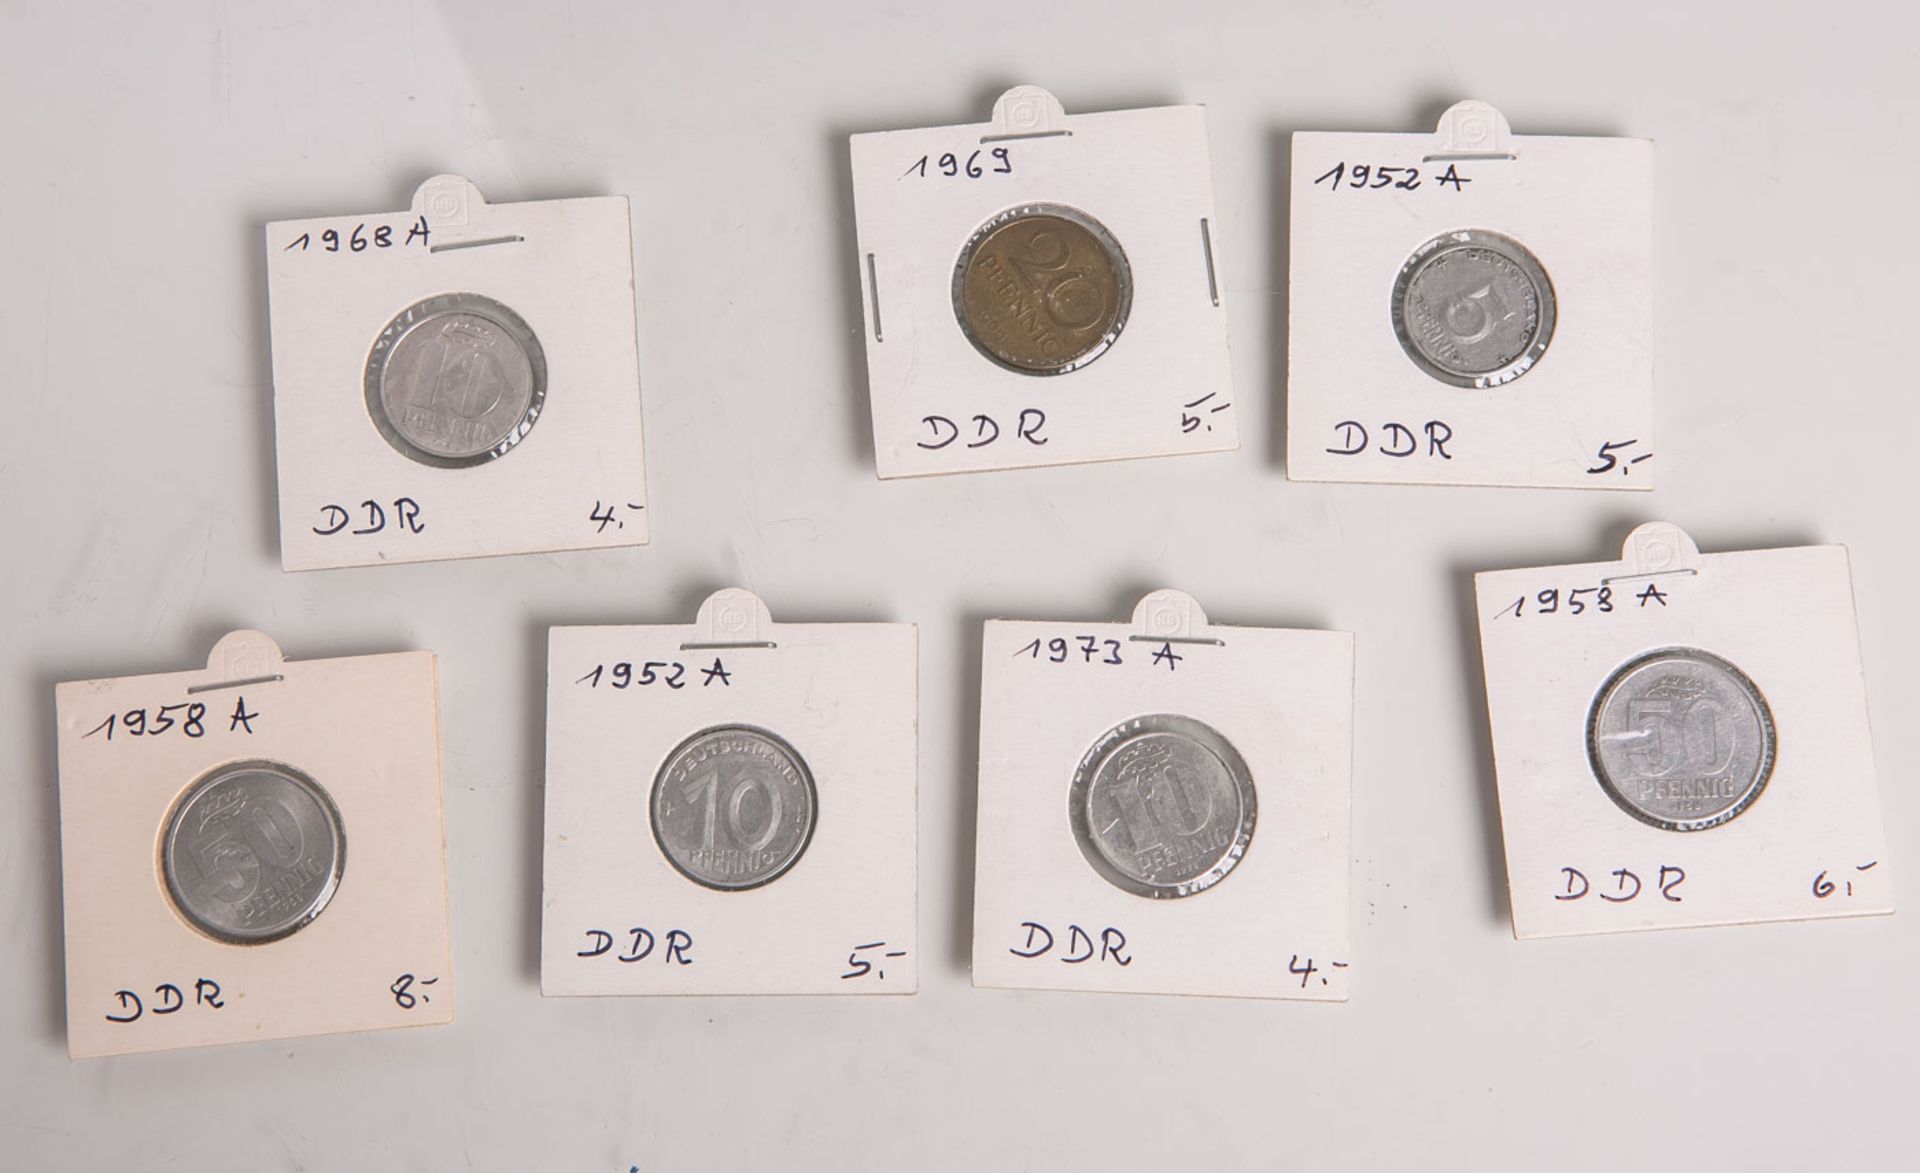 Konvolut von 7 Umlaufmünzen (DDR), bestehend aus: 1x 5 Pfennig (1952 A), 3x 10 Pfennig (1952 A, 1968